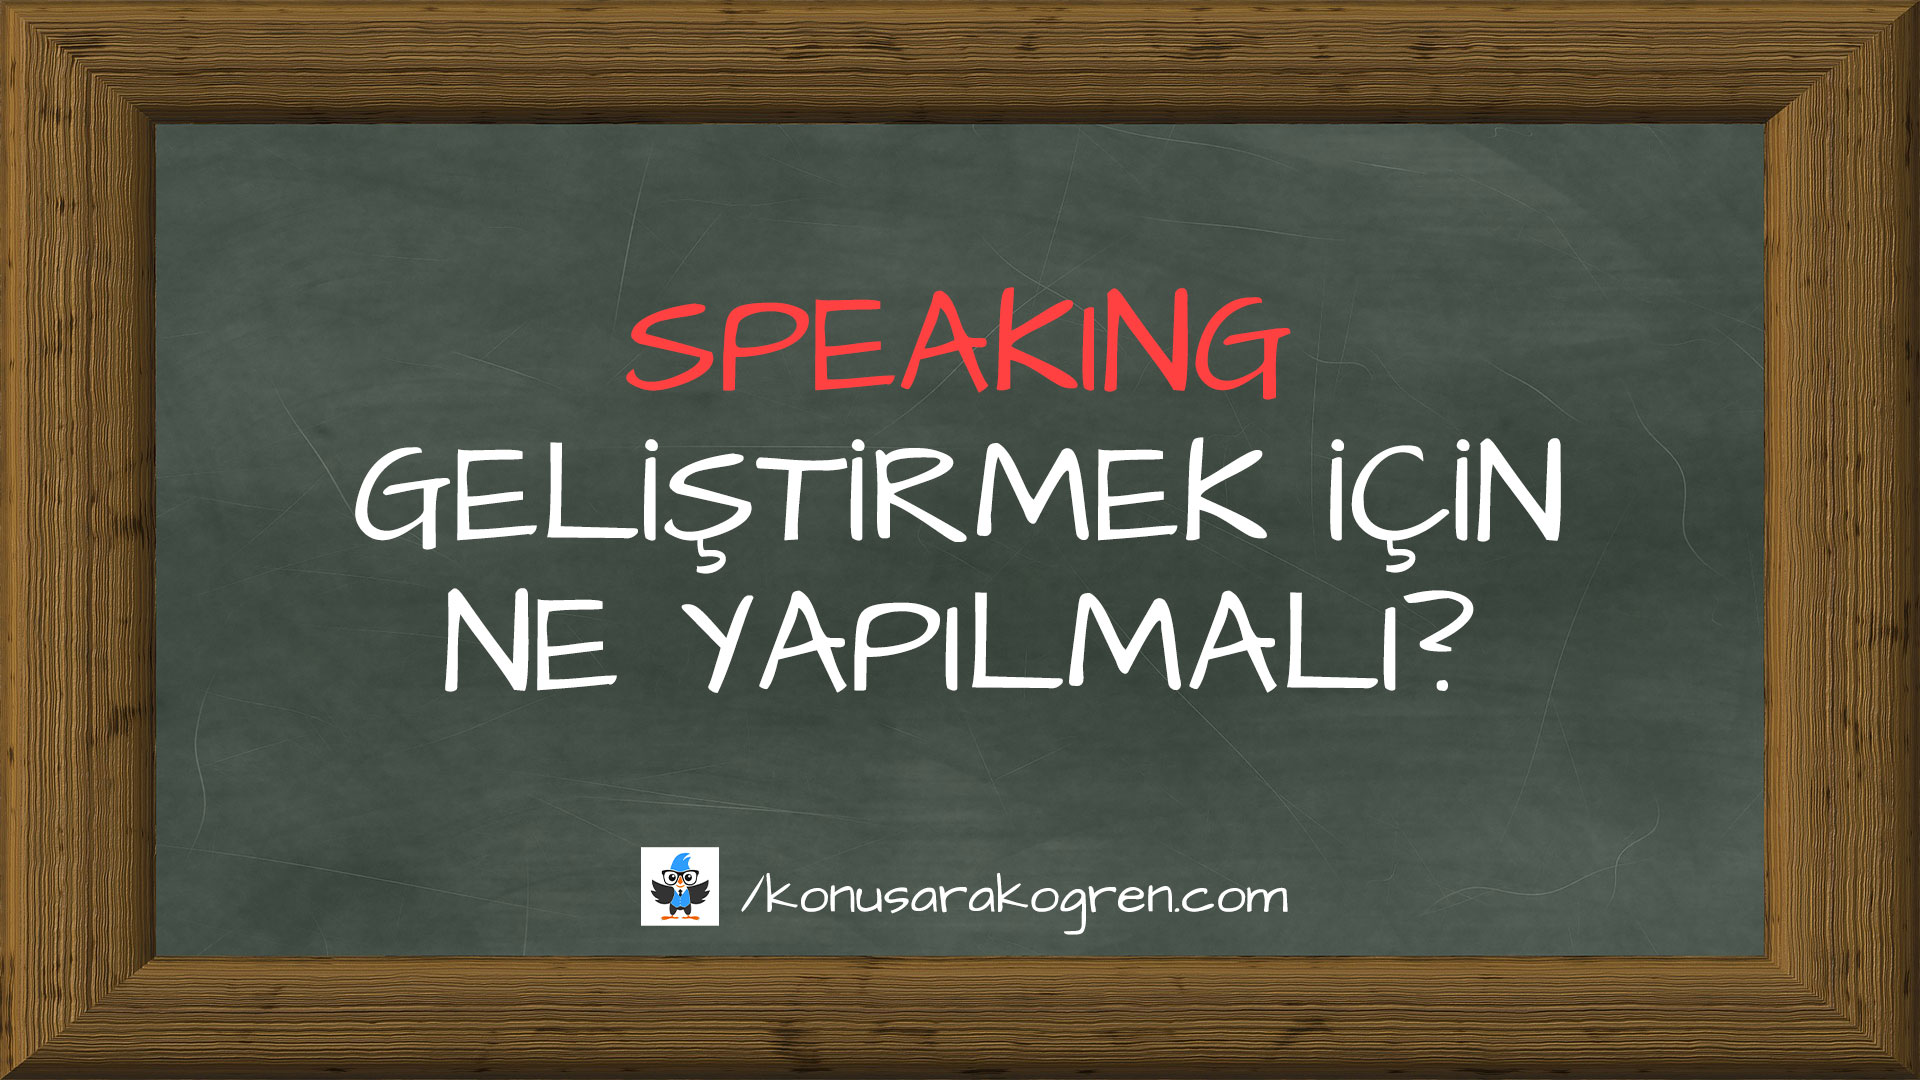 Speaking geliştirmek için ne yapılmalı?